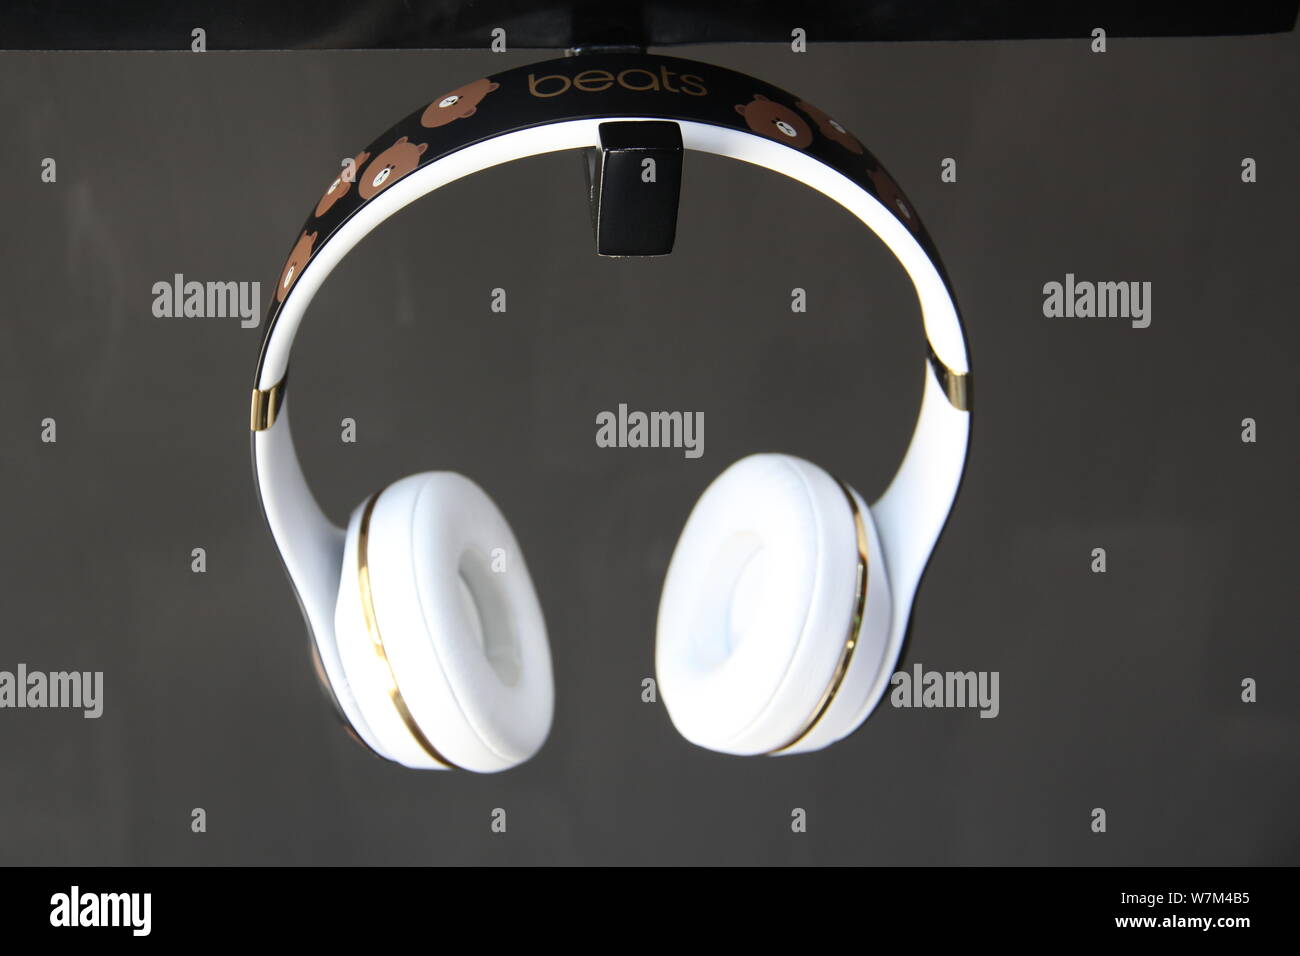 Beats by dre fotografías e imágenes de alta resolución - Alamy